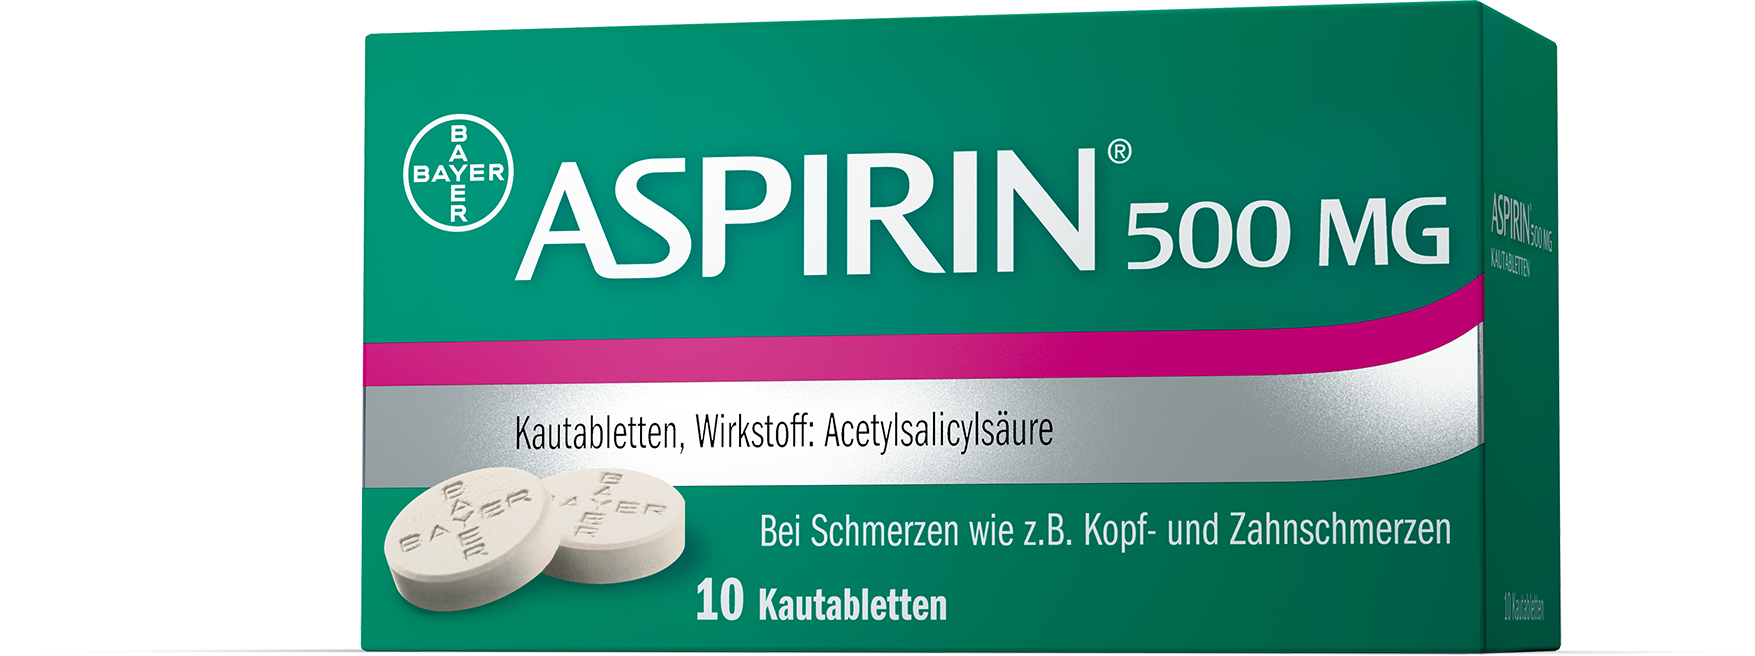 Aspirin 500 mg - Kautabletten